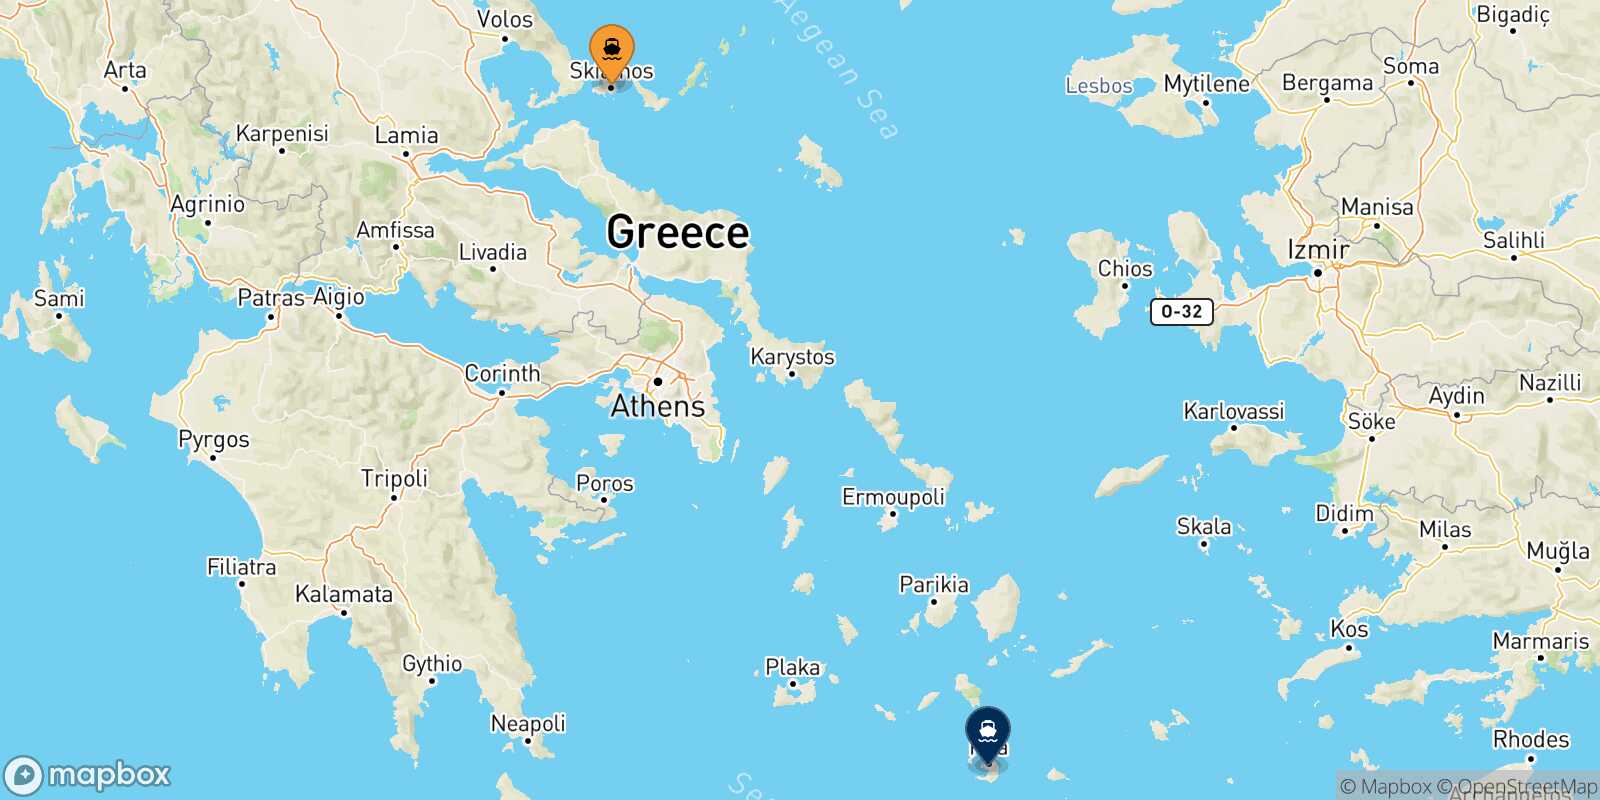 Skiathos Thira (Santorini) route map